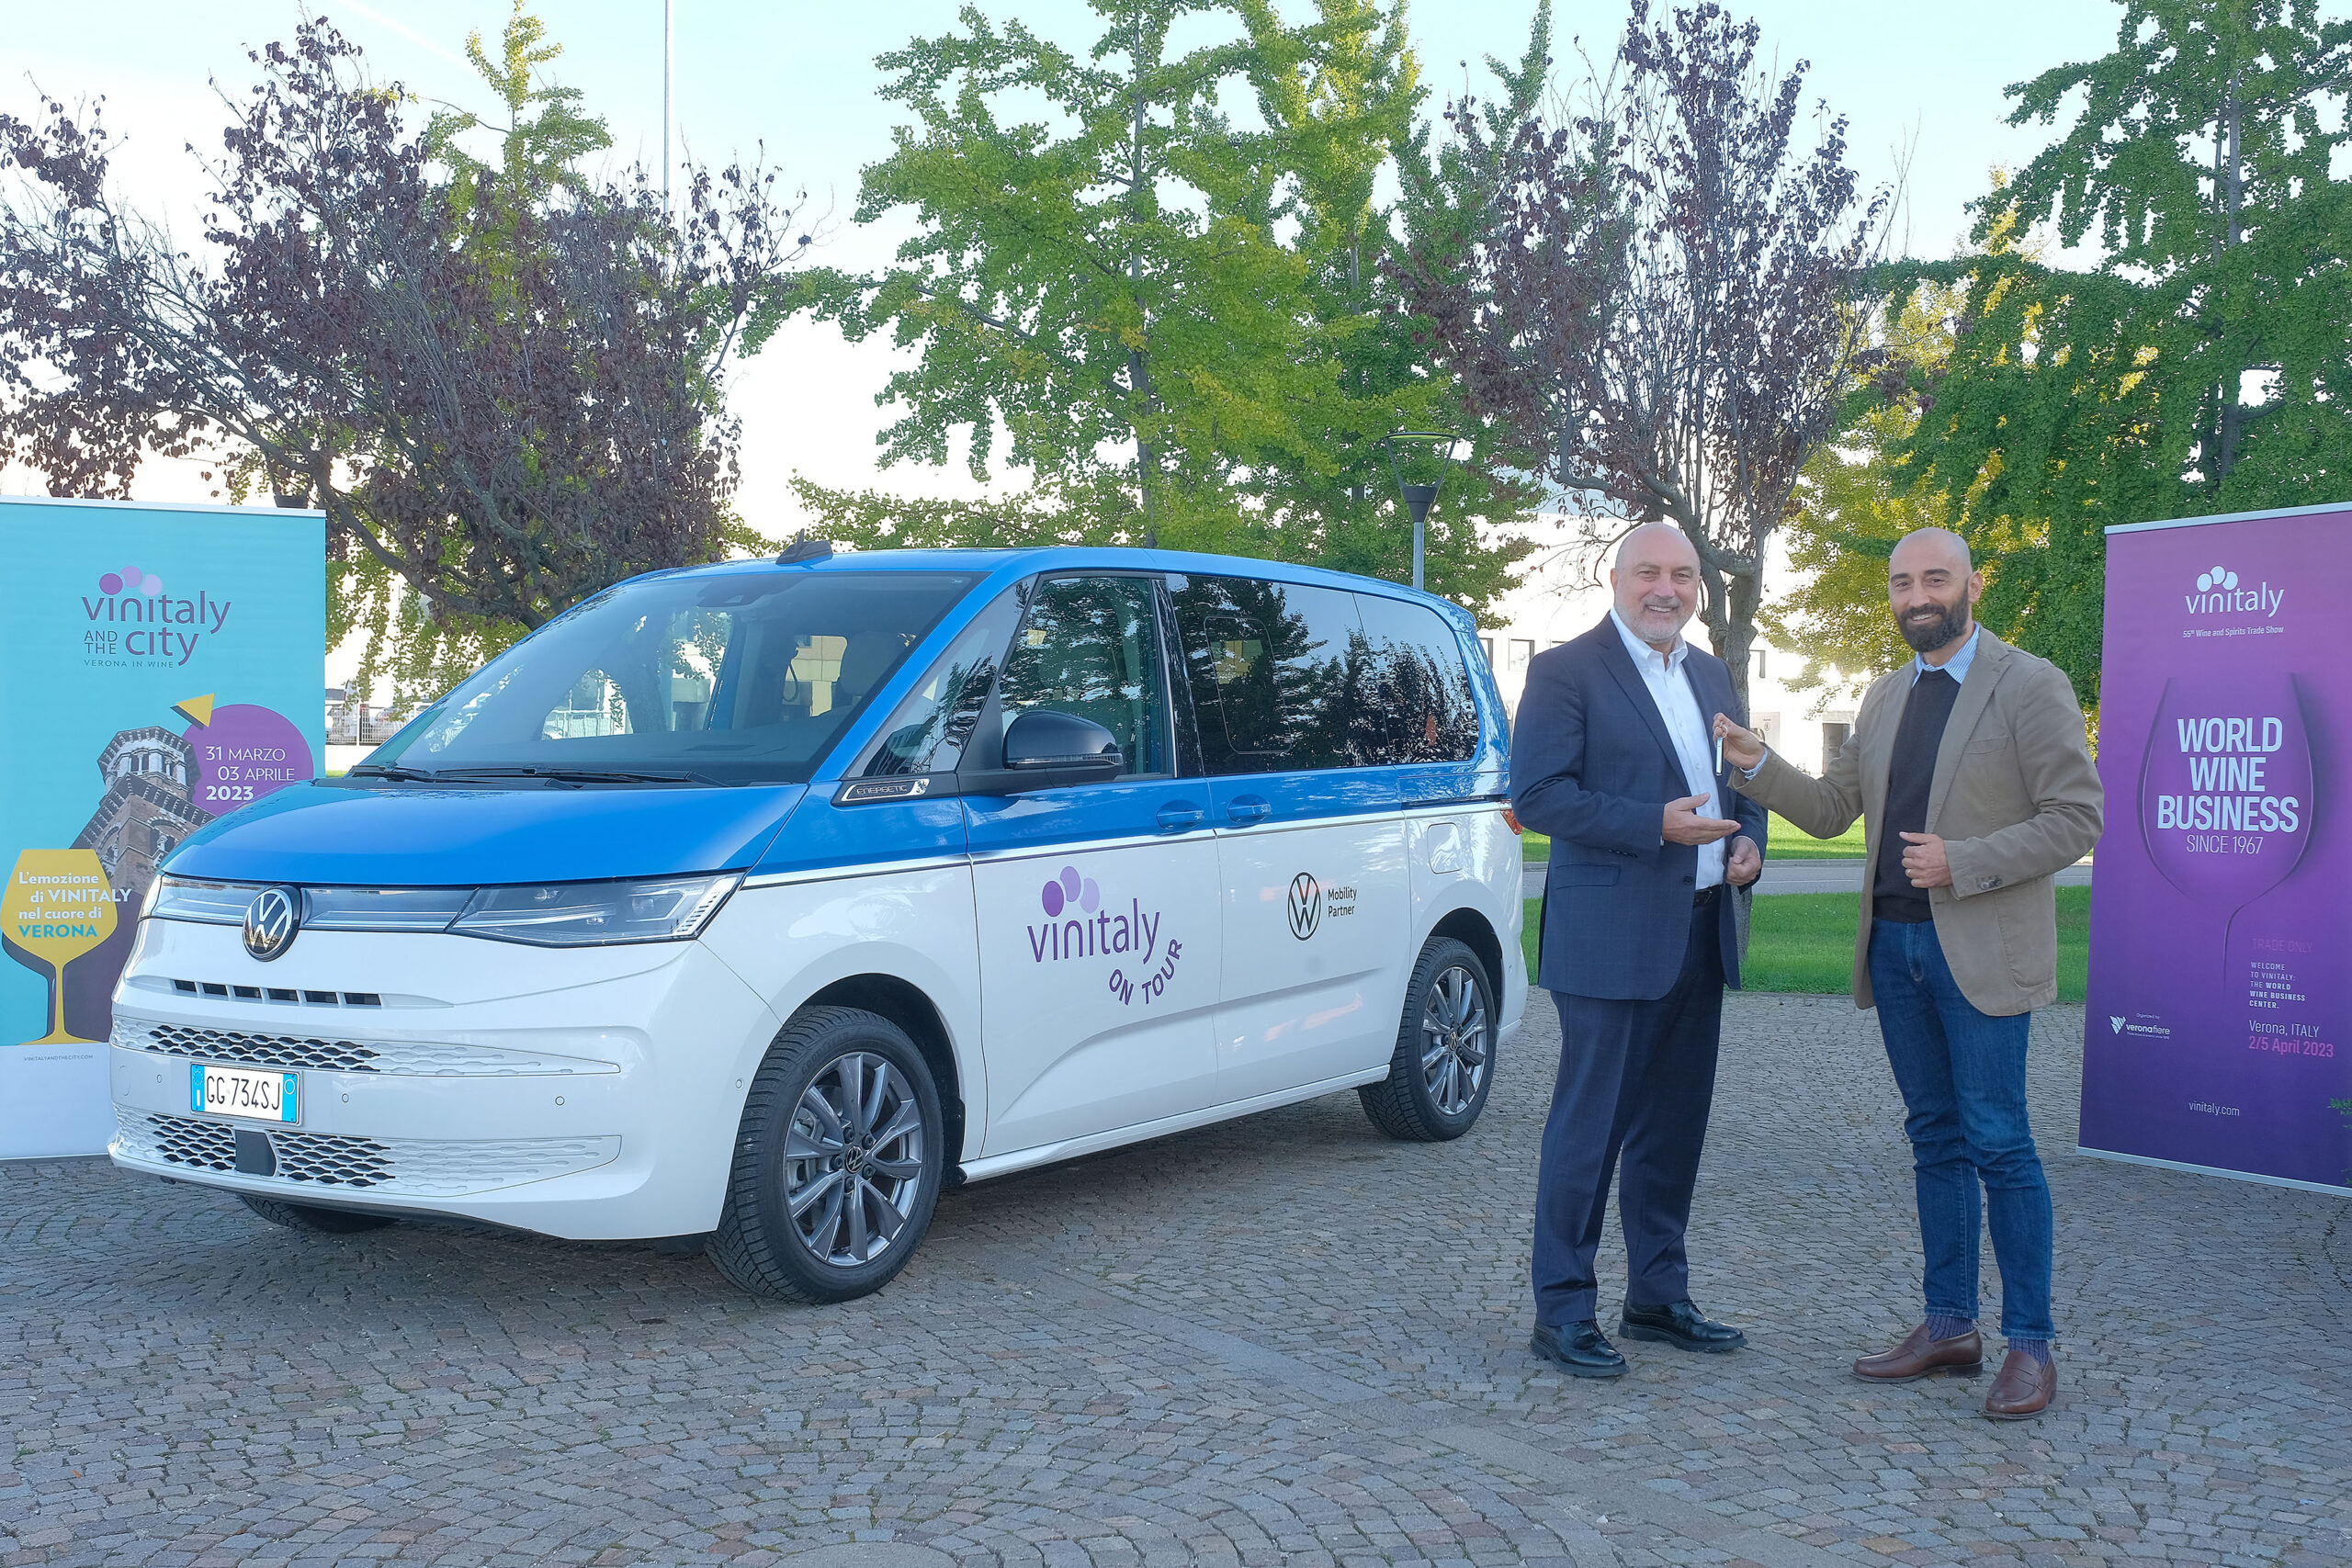 Consegna mezzo GB e FABIO DI GIUSEPPE, articolo: Vinitaly on tour con Volkswagen veicoli partner 2023, foto da comunicato stampa